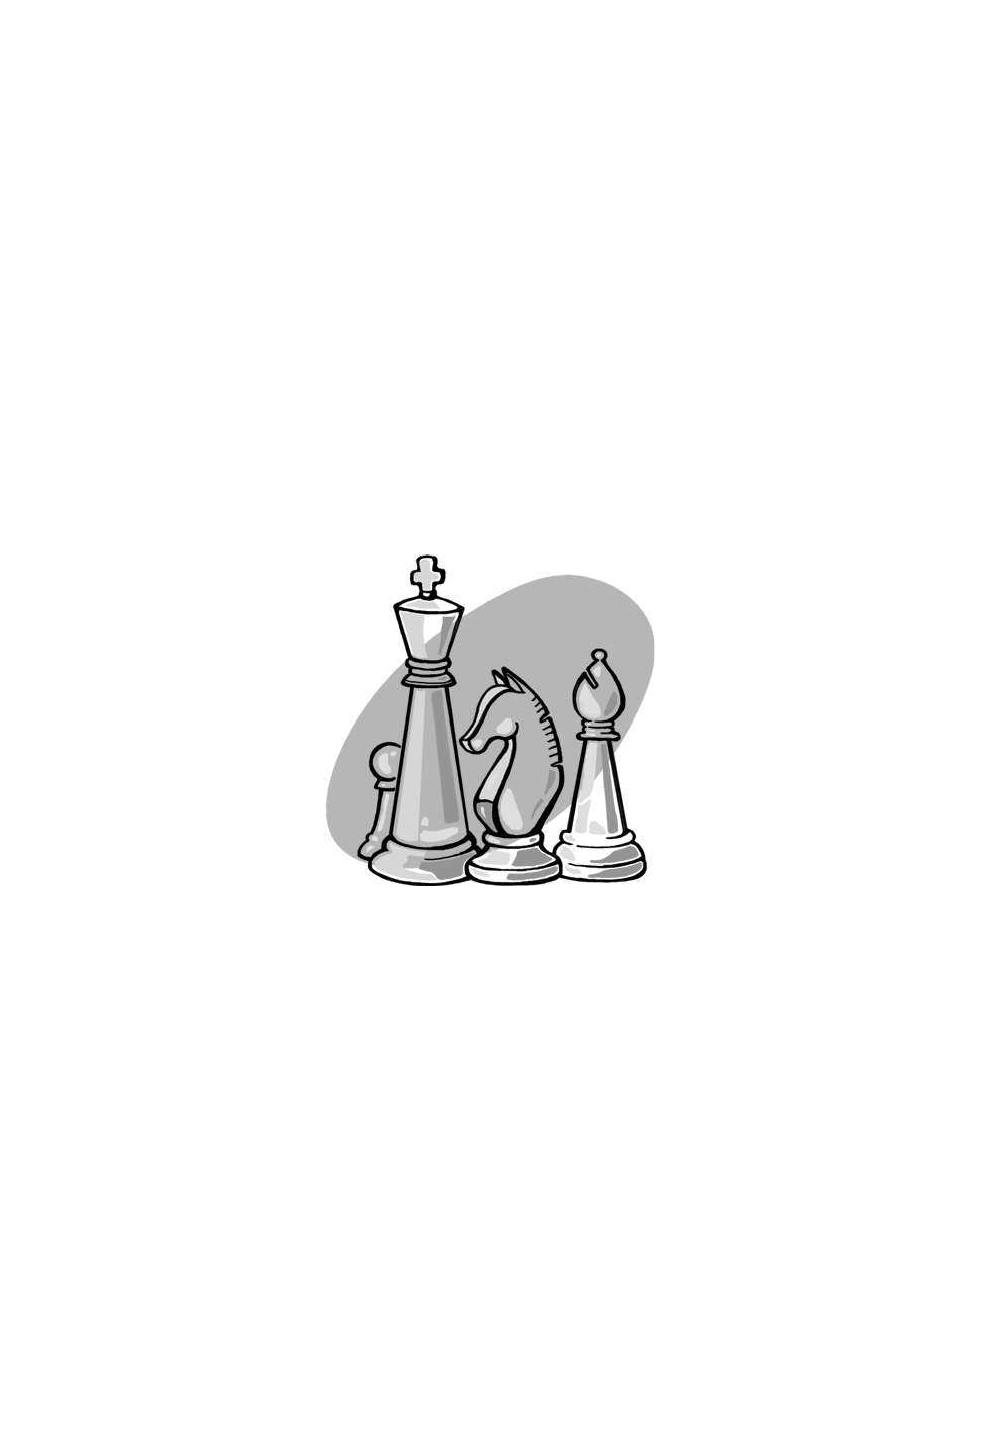 Шахматы: обучающий задачник. "Медная книга" - фото №3